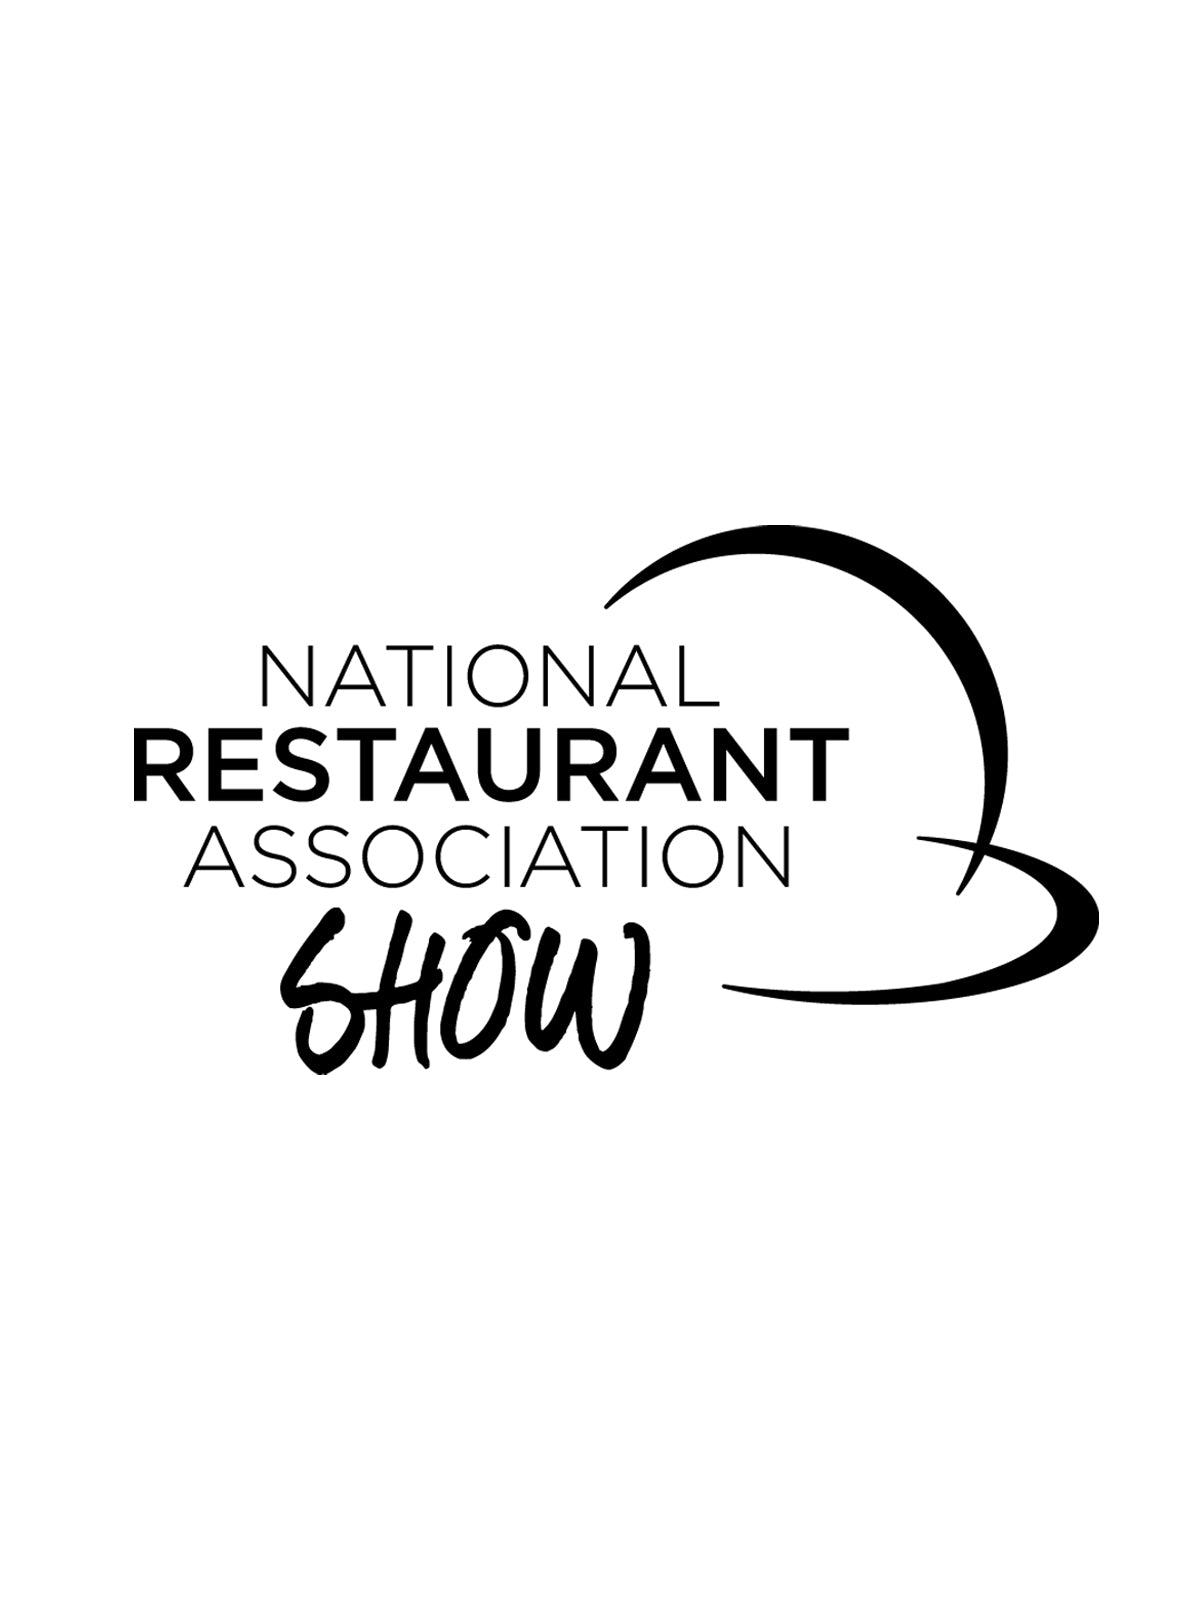 National Restaurant Association Show Logo